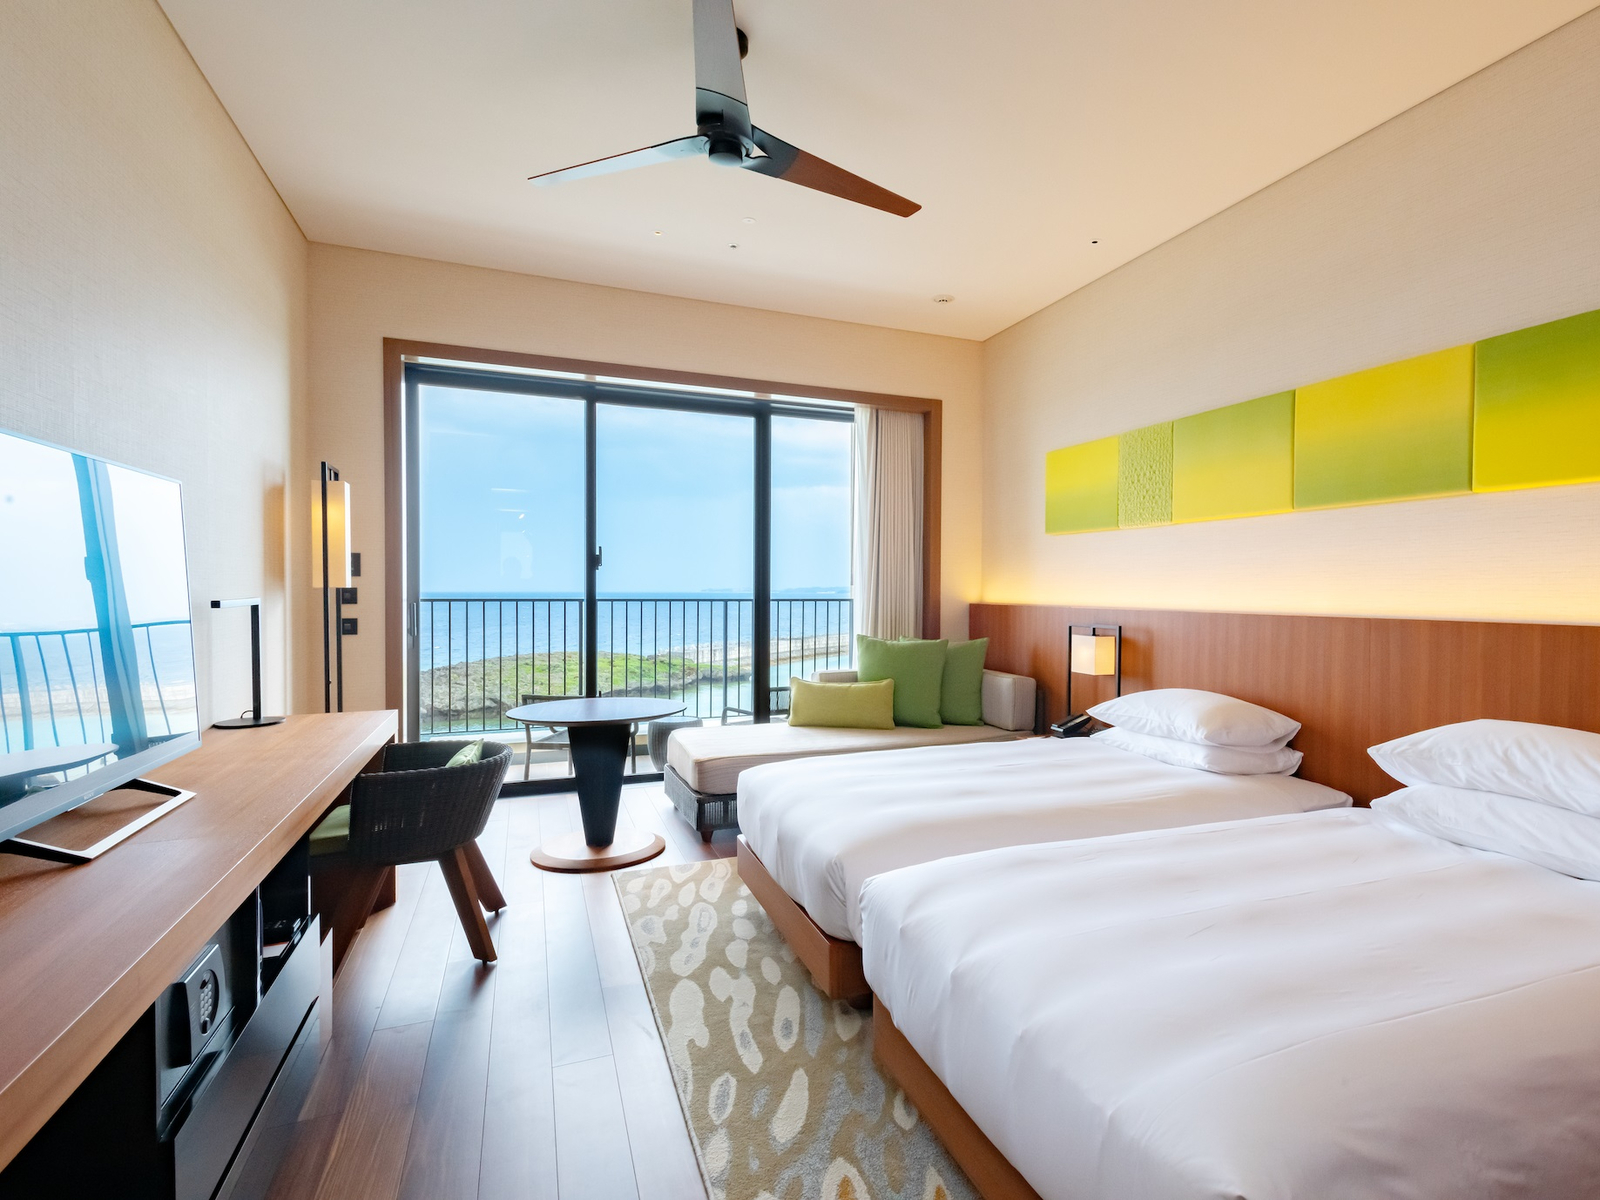 瀬良垣漁港と恩納岳の眺めが楽しめる客室は、オープンエアバルコニー付きのハーバービュー